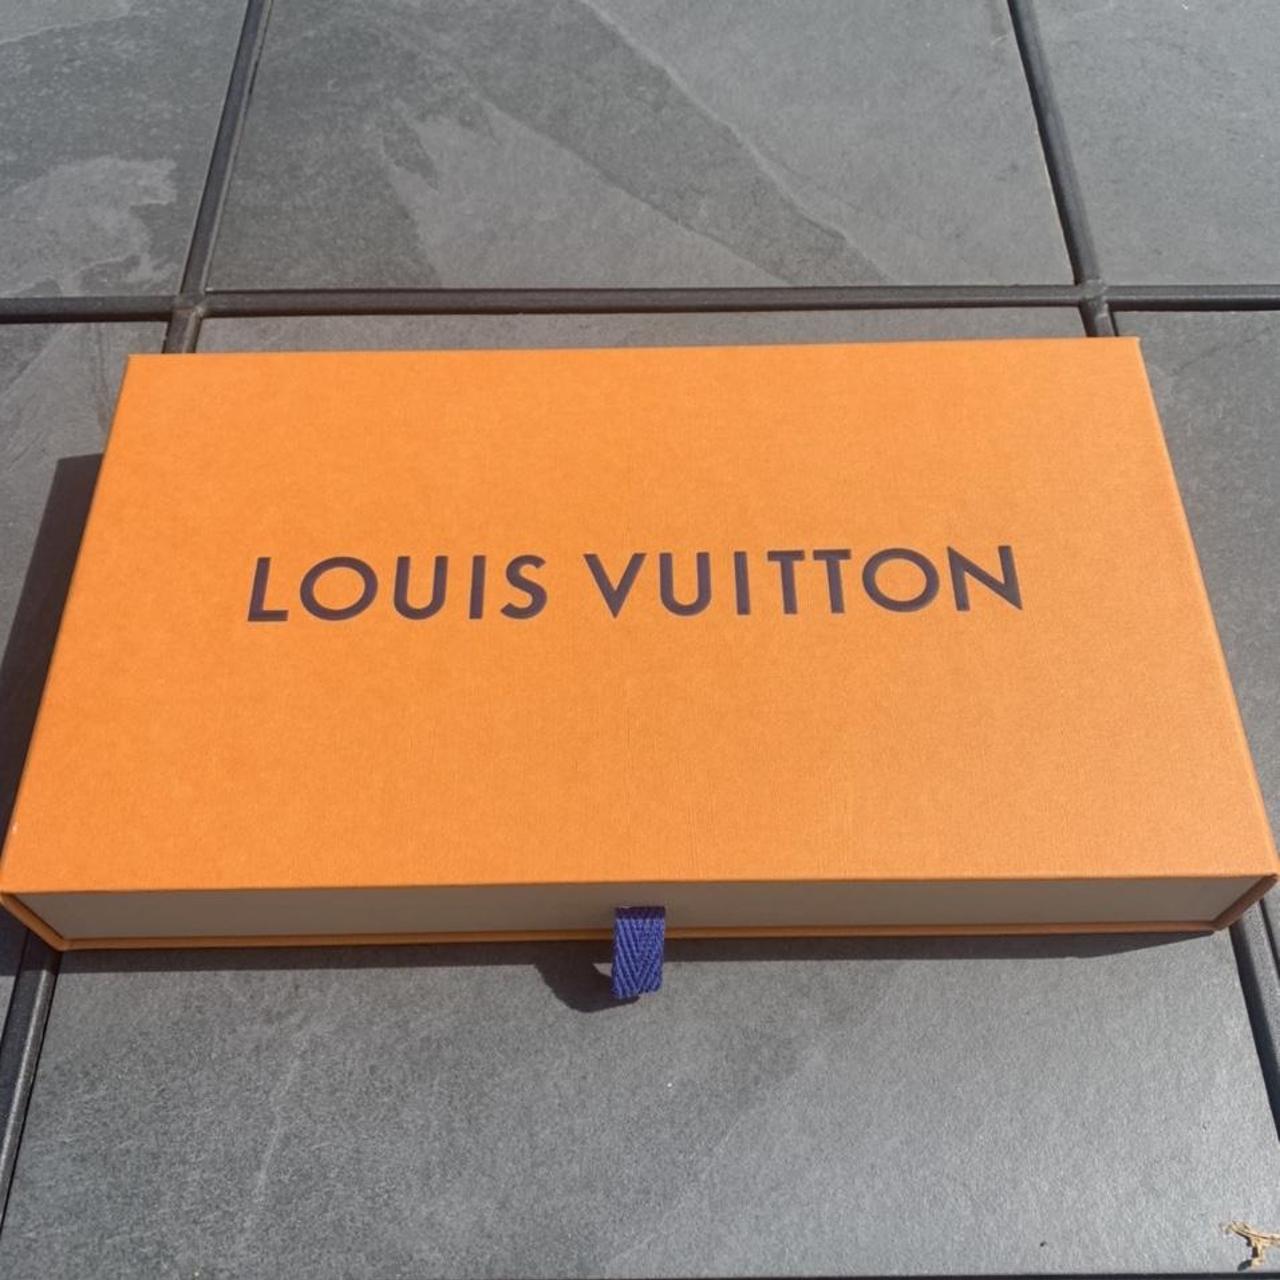 Louis Vuitton Beanie Hat #louisvuitton #hat #designer - Depop